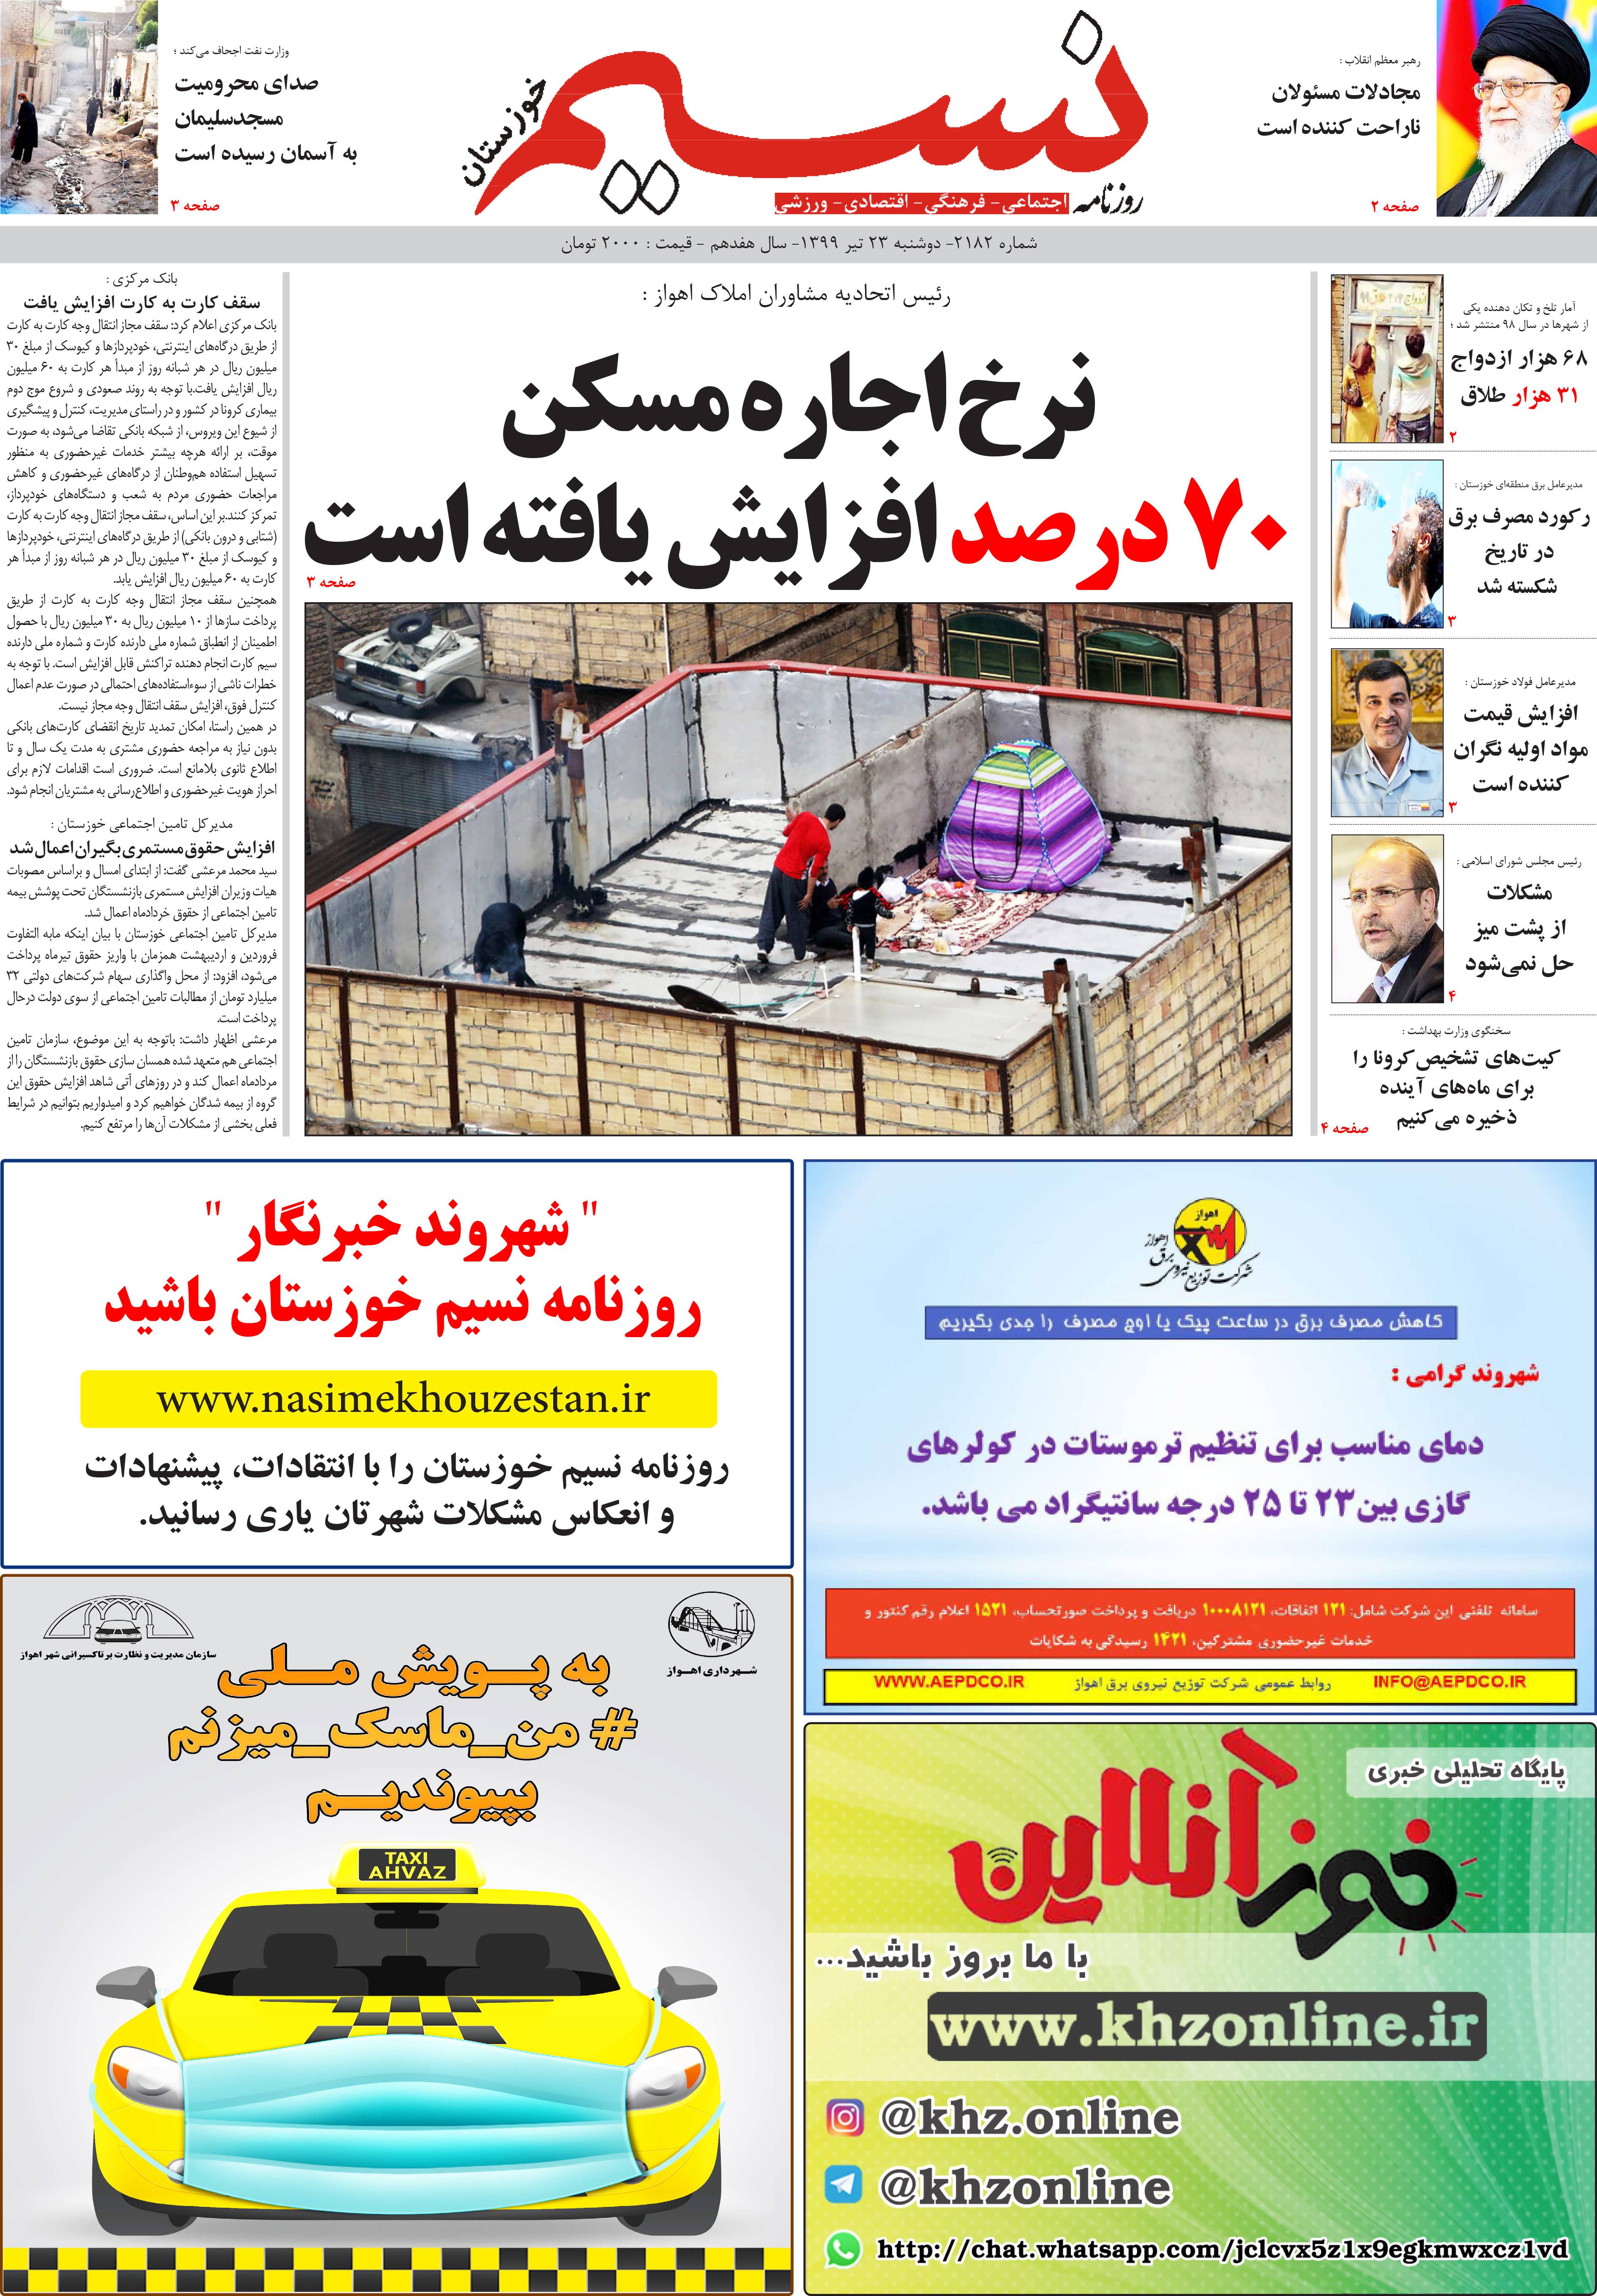 صفحه اصلی روزنامه نسیم شماره 2182 